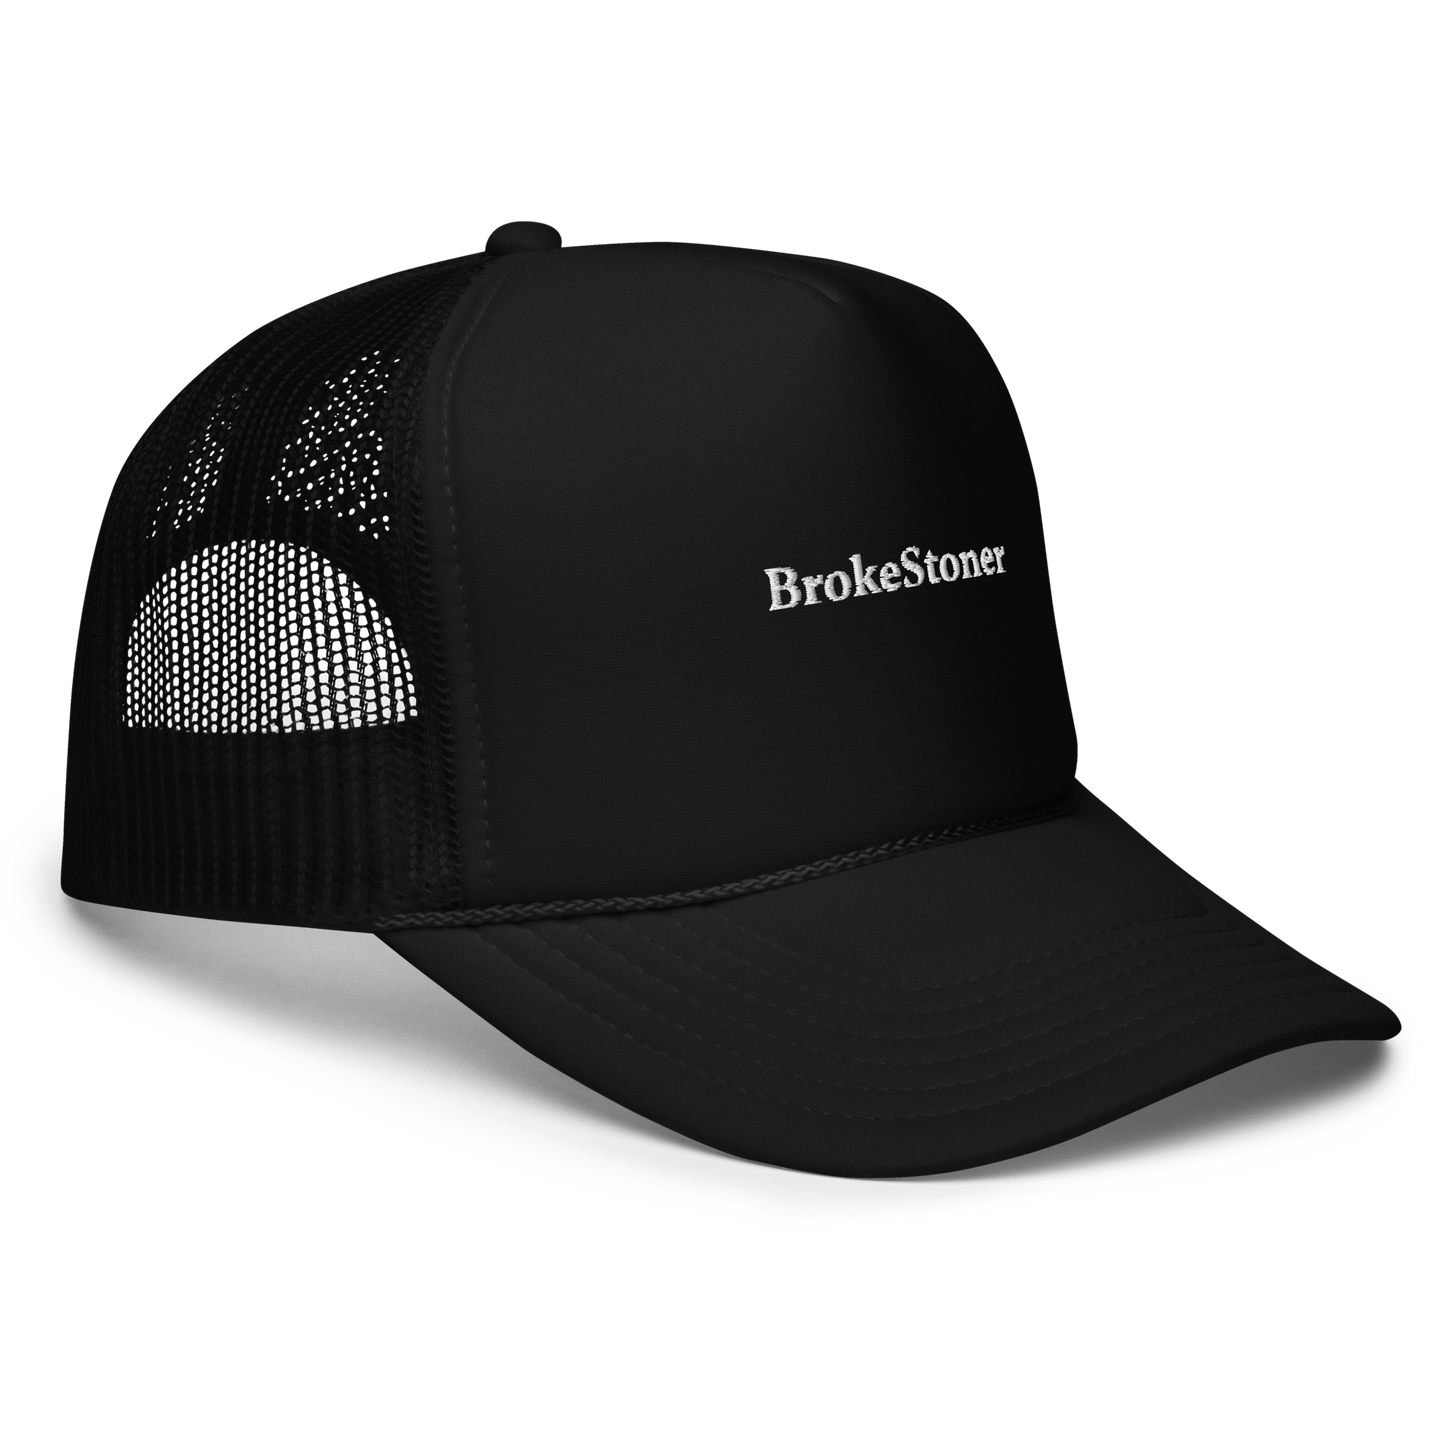 BrokeStoner.com The Trucker Hat